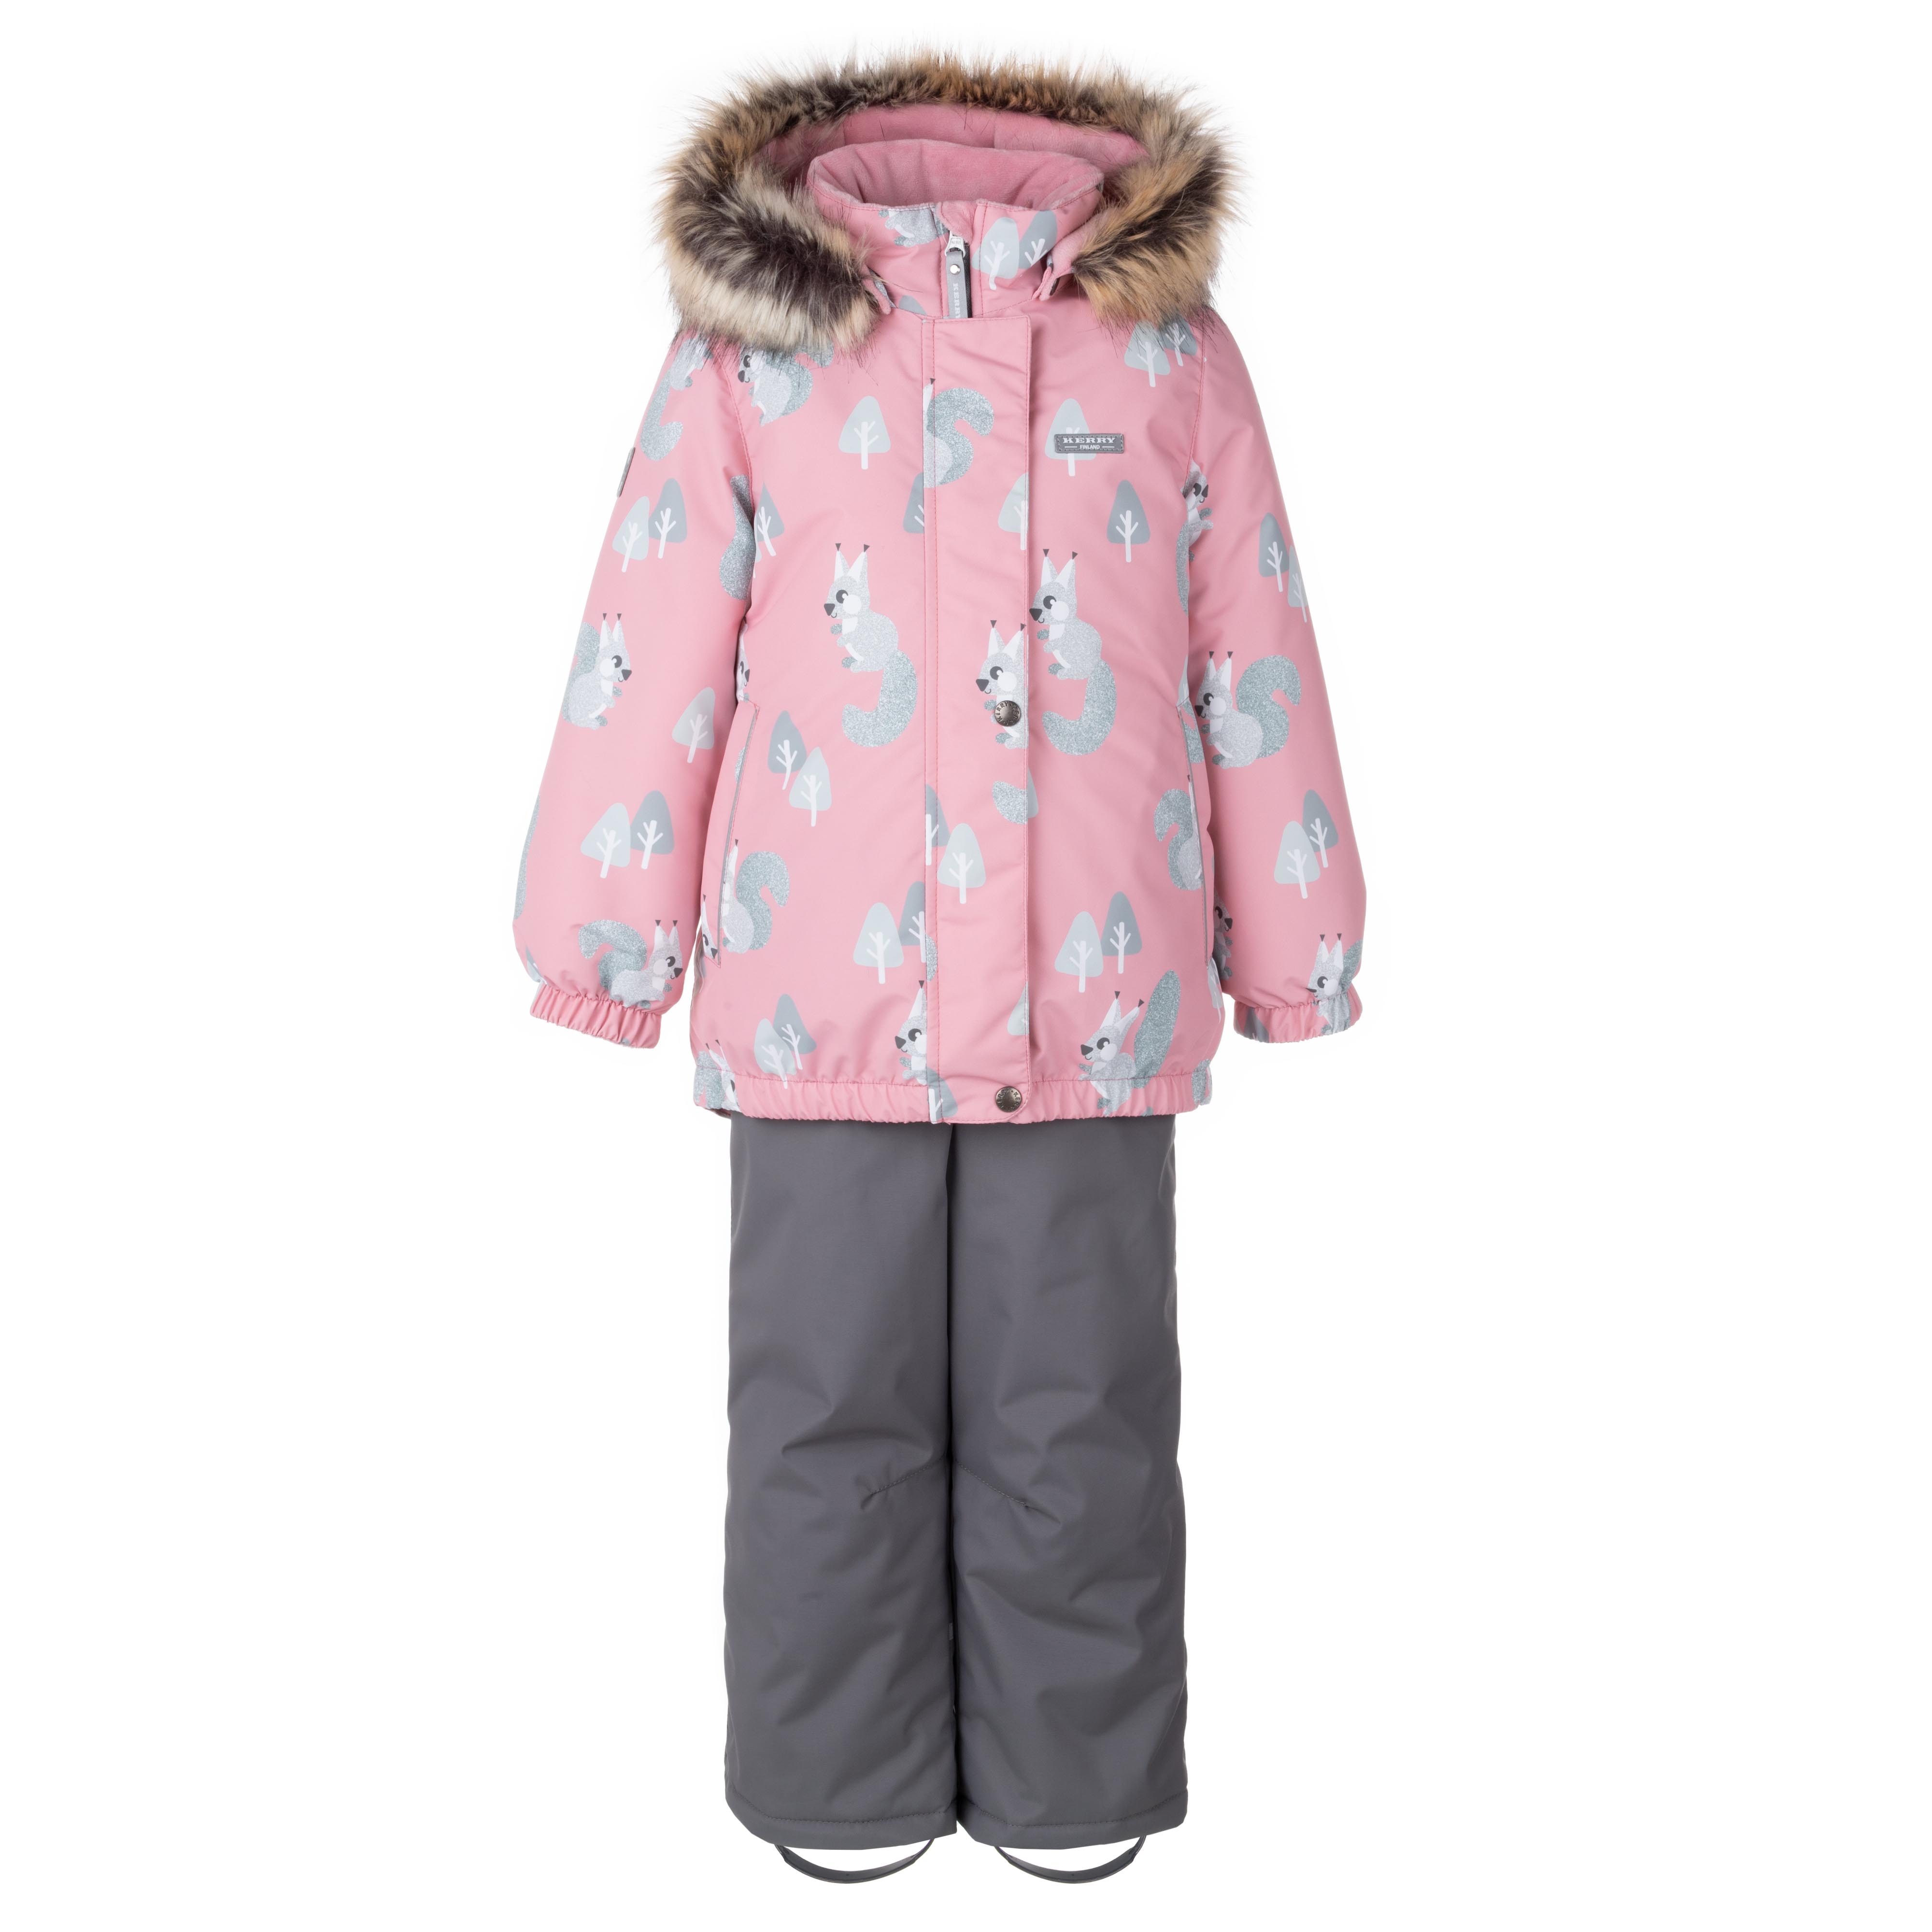 Комплект верхней одежды KERRY K23420 A, розовый, серый, 116